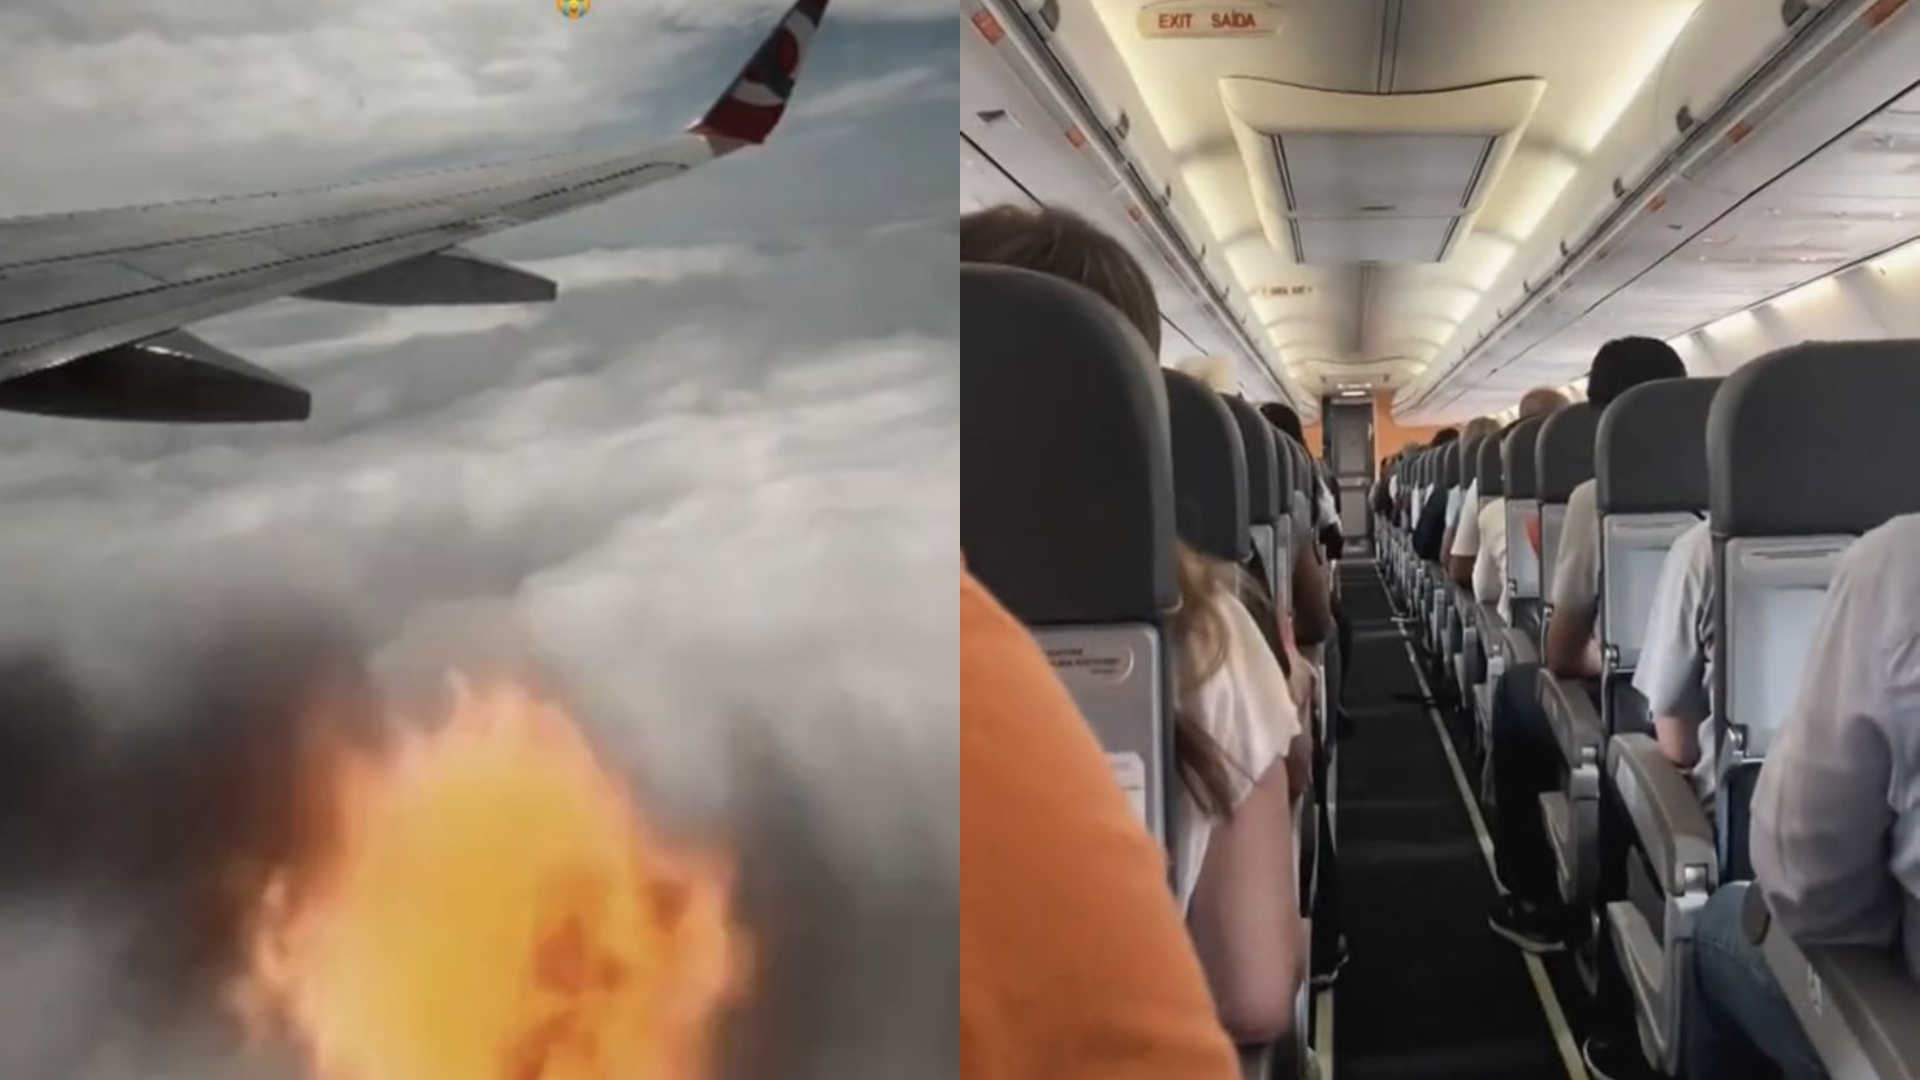 Vídeo mostra desespero de passageiros ao notarem fogo em turbina de avião minutos após decolagem, no RJ